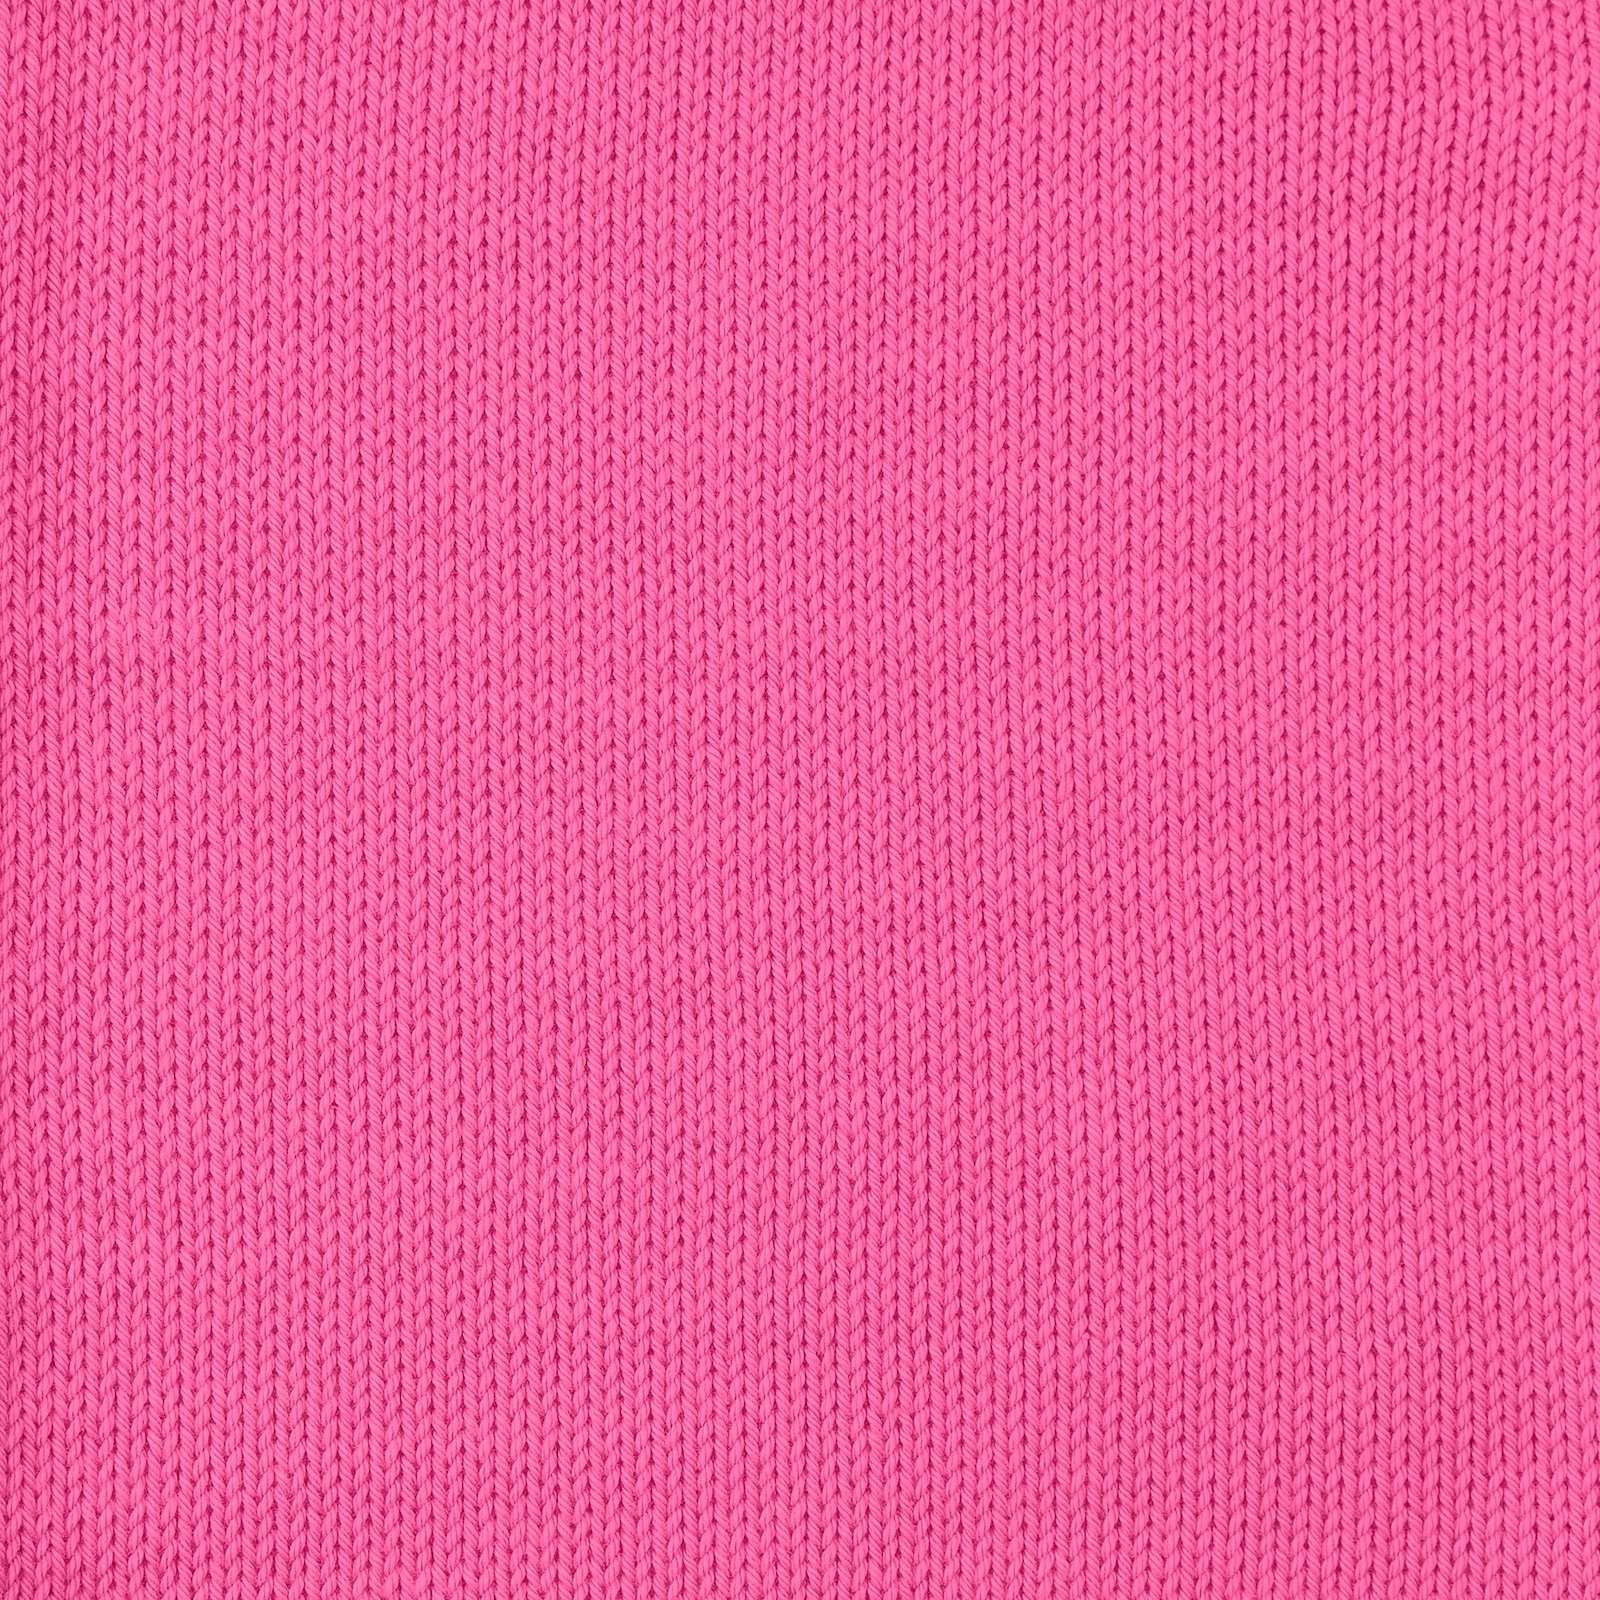 FRAYA, 100% cotton 8/4  yarn  "Colourful", pink 90060010_sskit